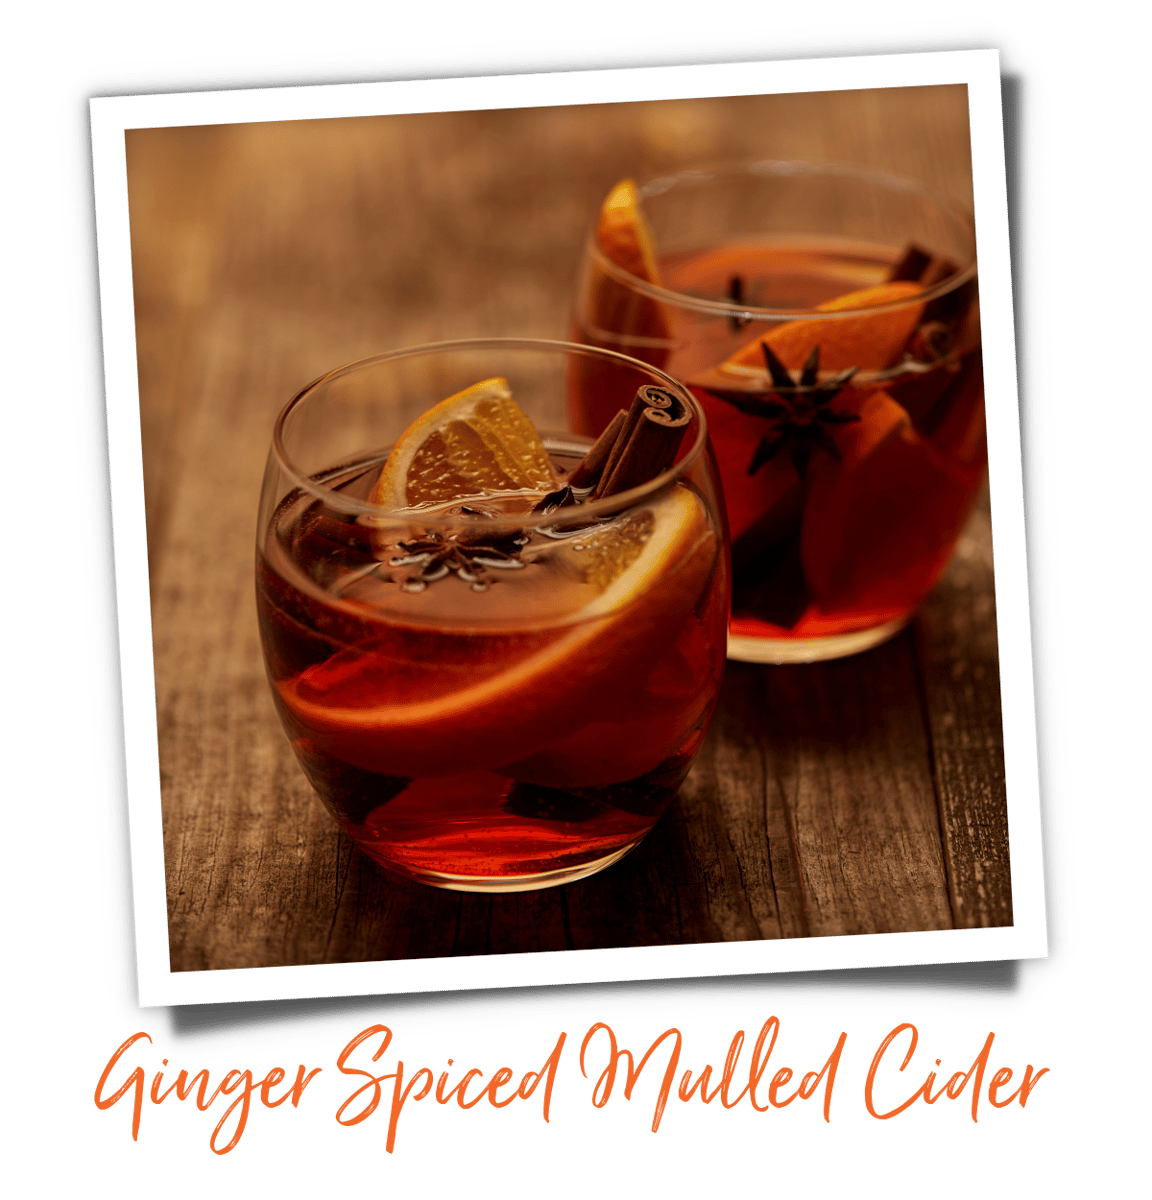 bondi-chai-recipe-ginger-spiced-mulled-cider